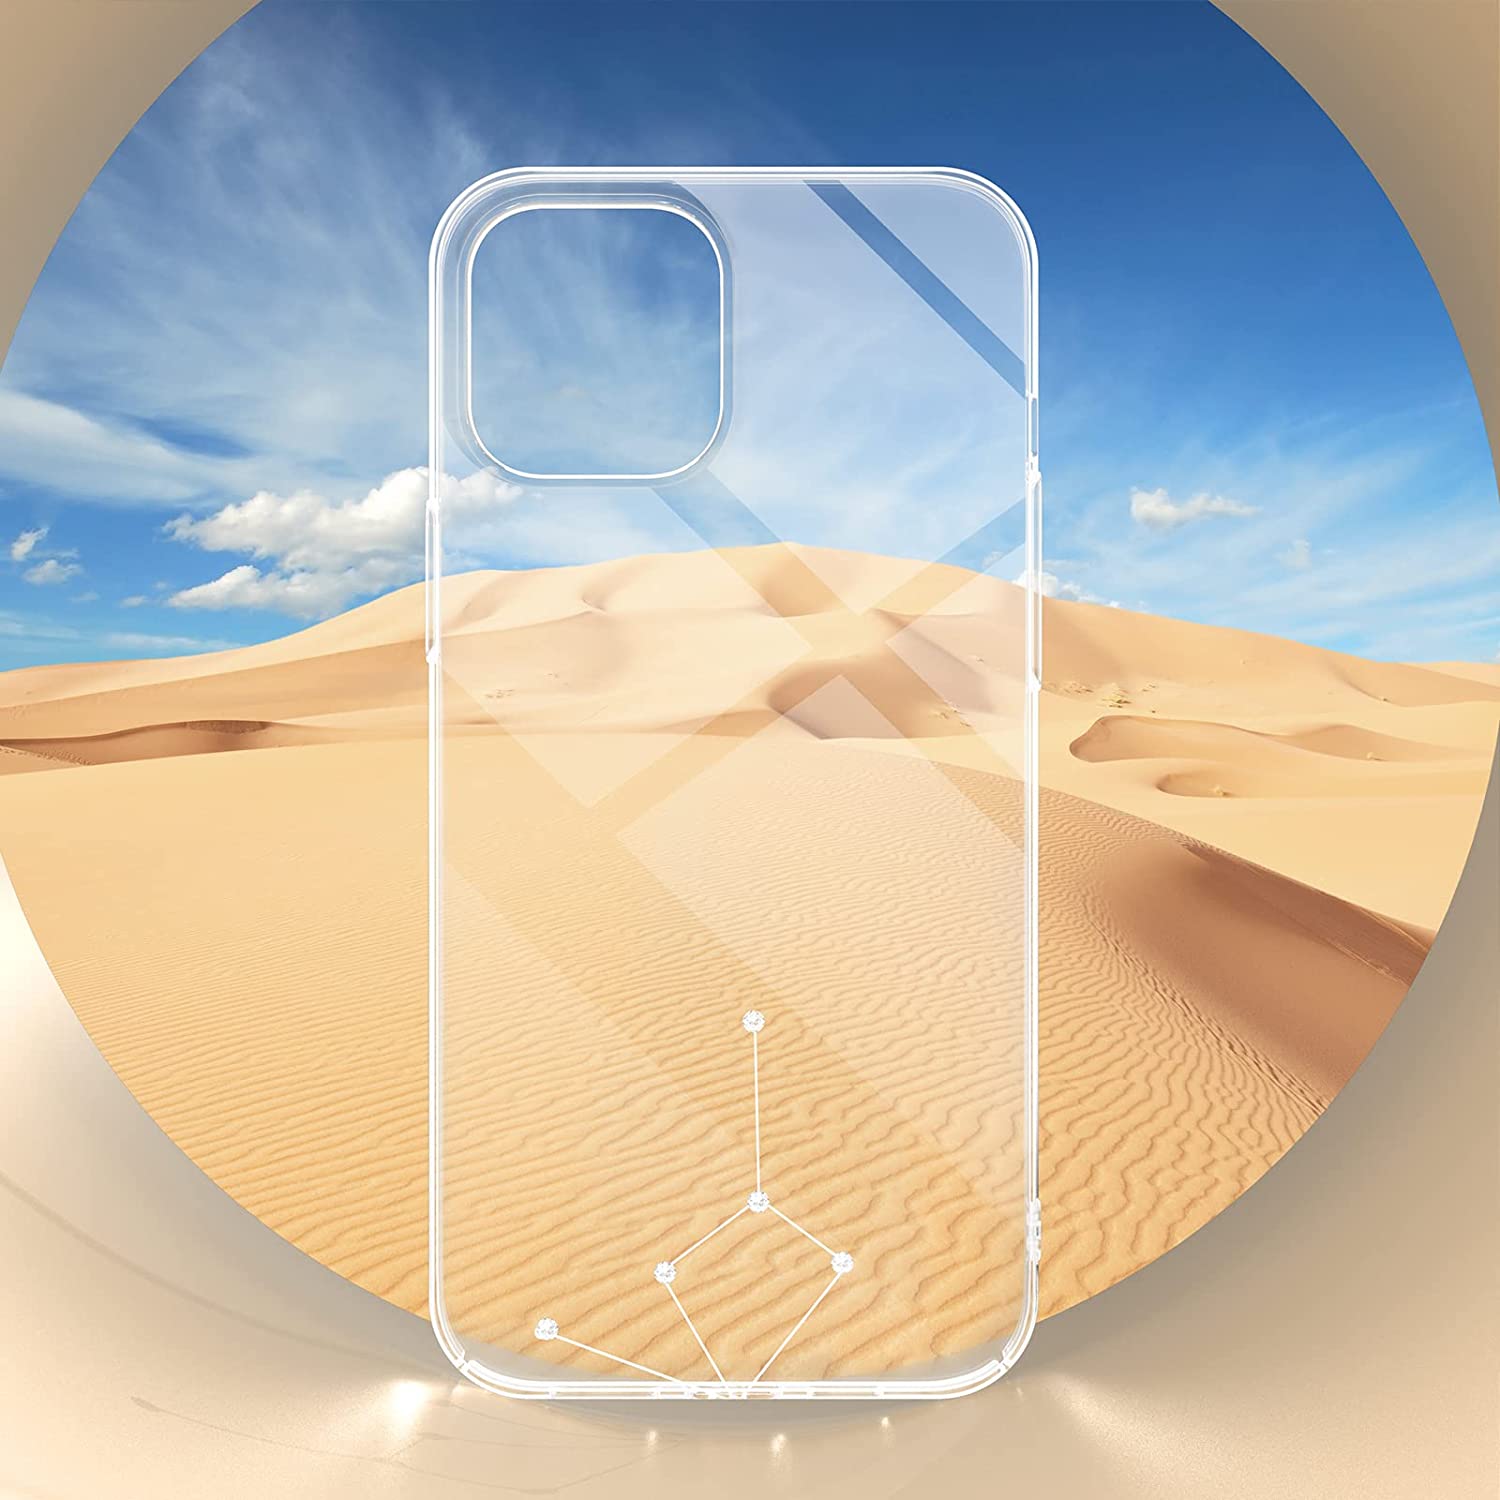 Ốp lưng chống sốc trong suốt đính đá swarovski cho iPhone 13 hiệu Memumi Swarovski Crystal